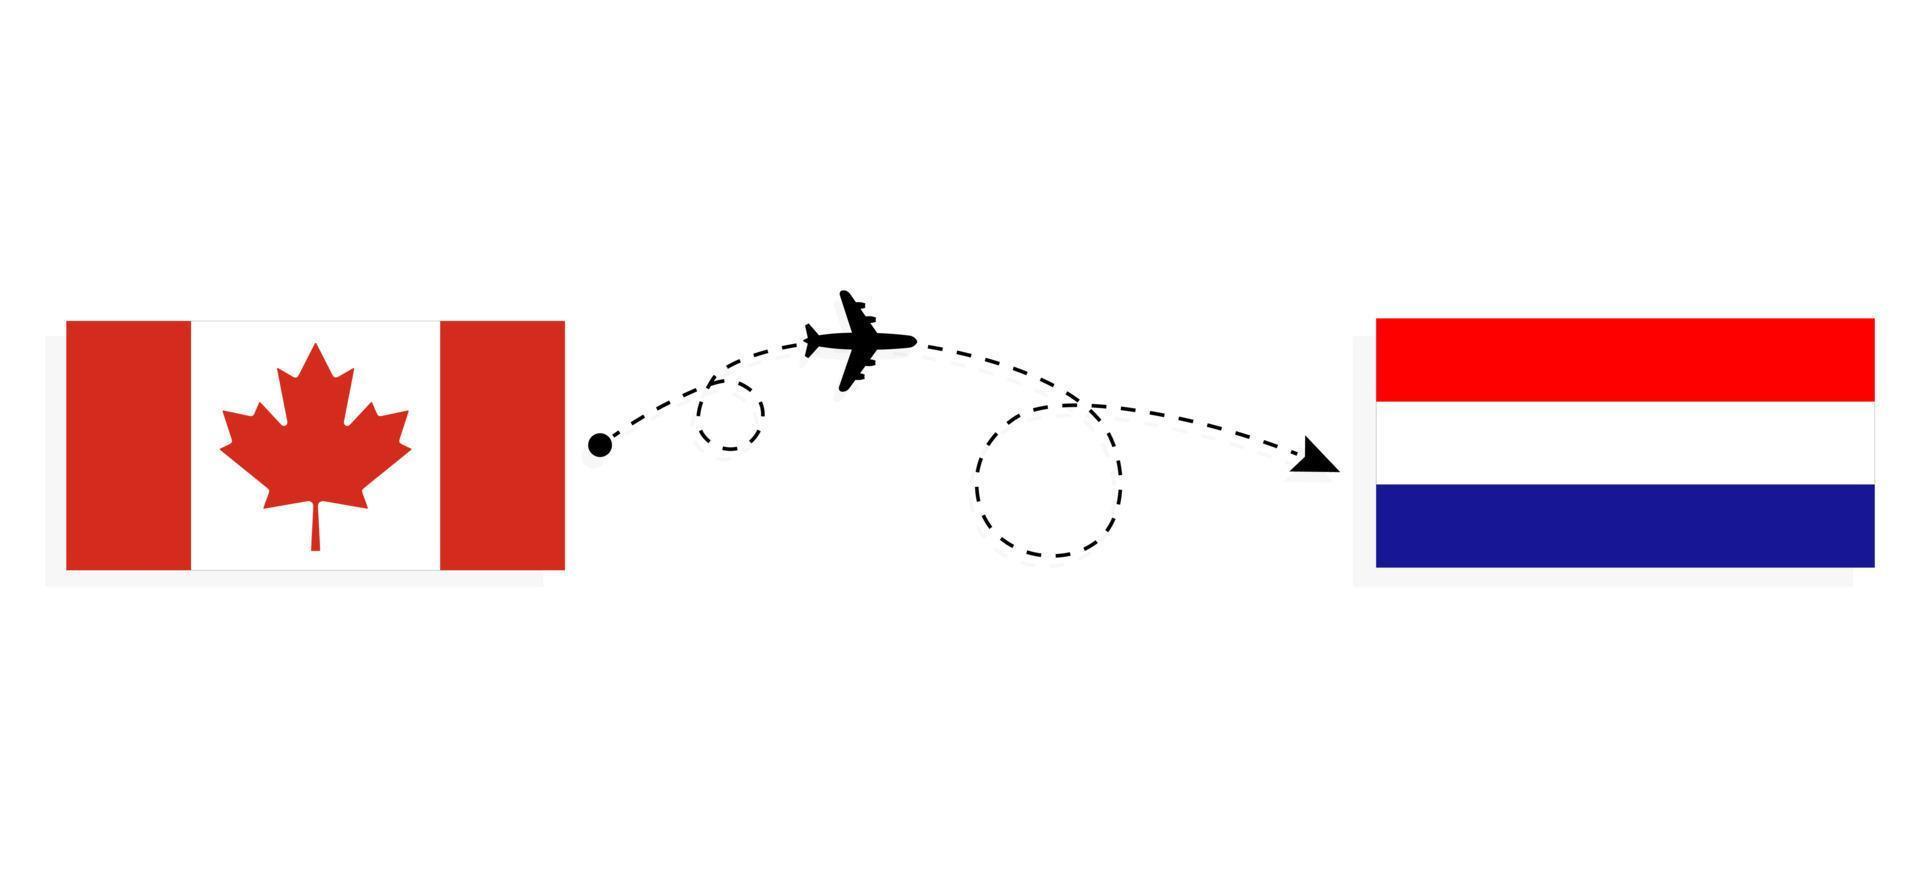 flyg och resor från Kanada till Kroatien med passagerarflygplan vektor